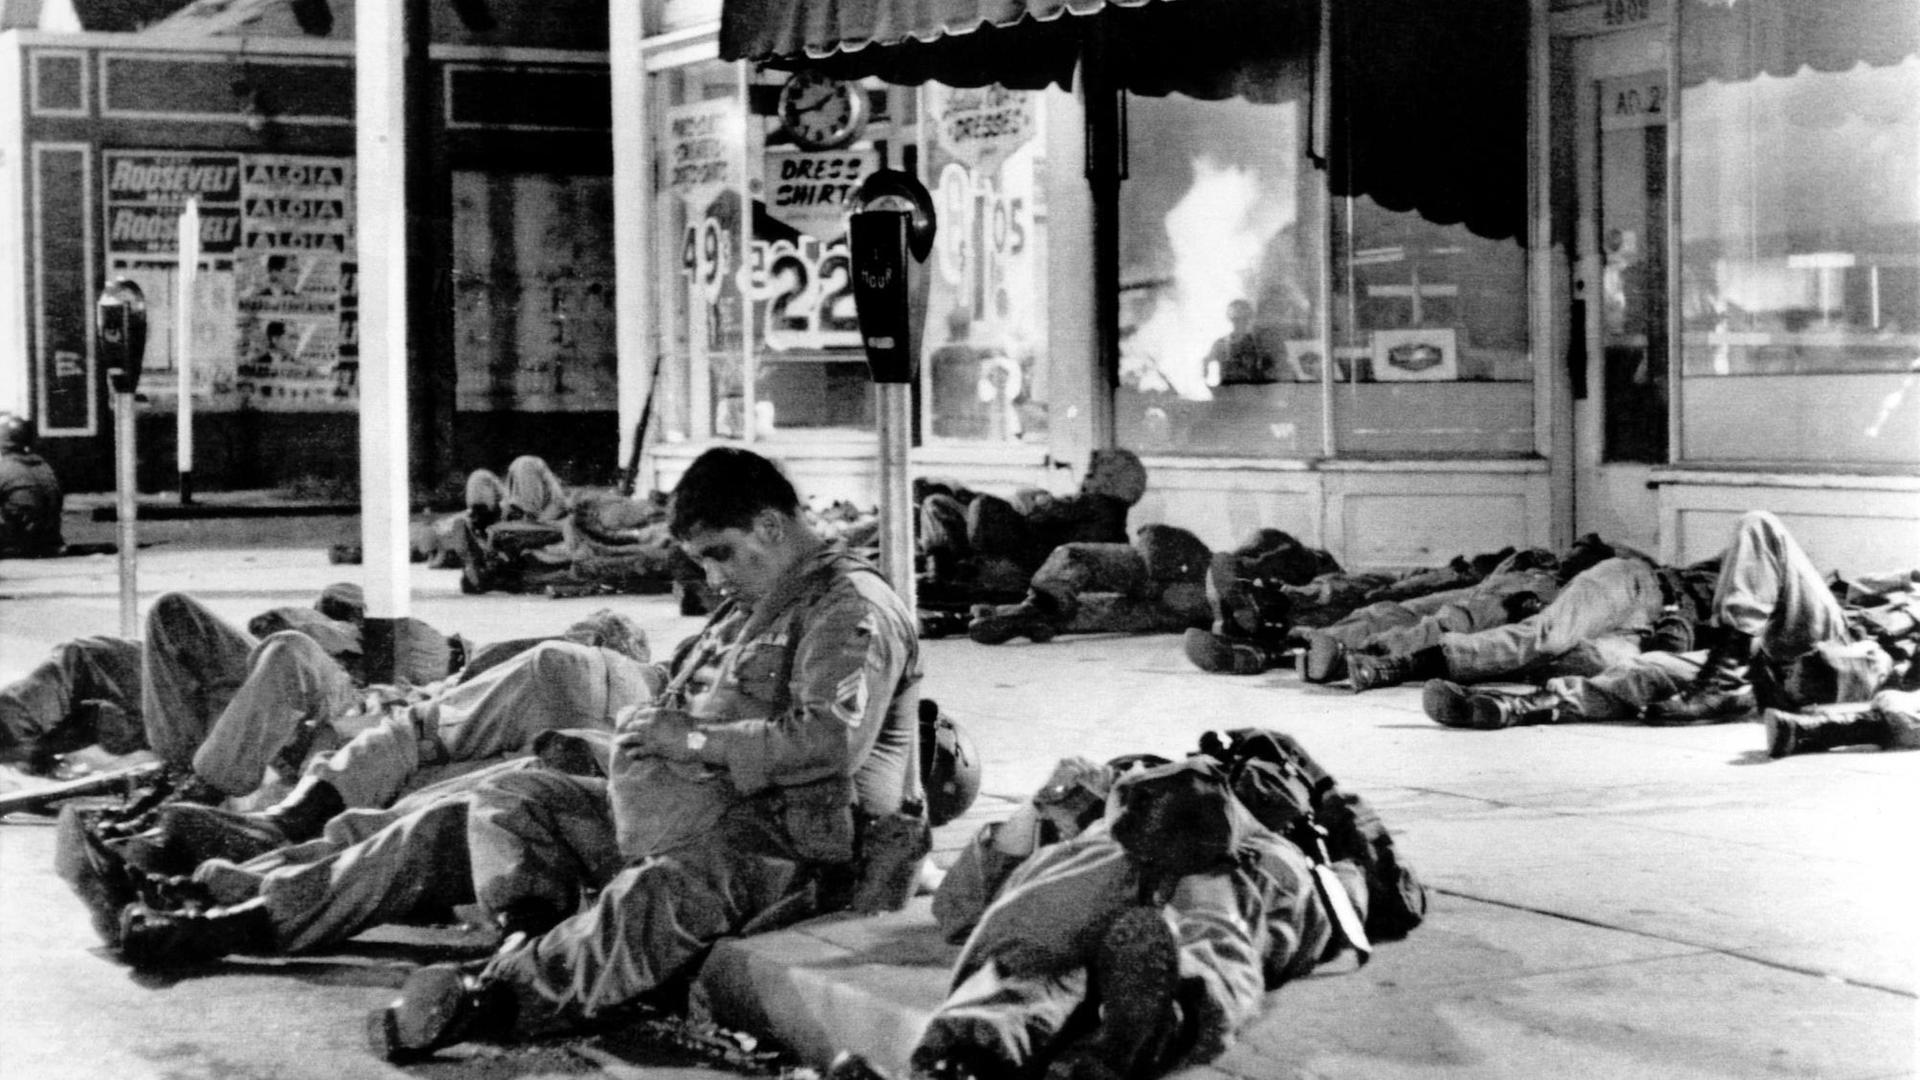 Erschöpfte Soldaten der Nationalgarde schlafen auf den Bürgersteigen im Watts-Distrikt nach Rassenunruhen in Los Angelers. In den Schaufenstern der Geschäfte spiegeln sich die Flammen eines brennenden Gebäudes.